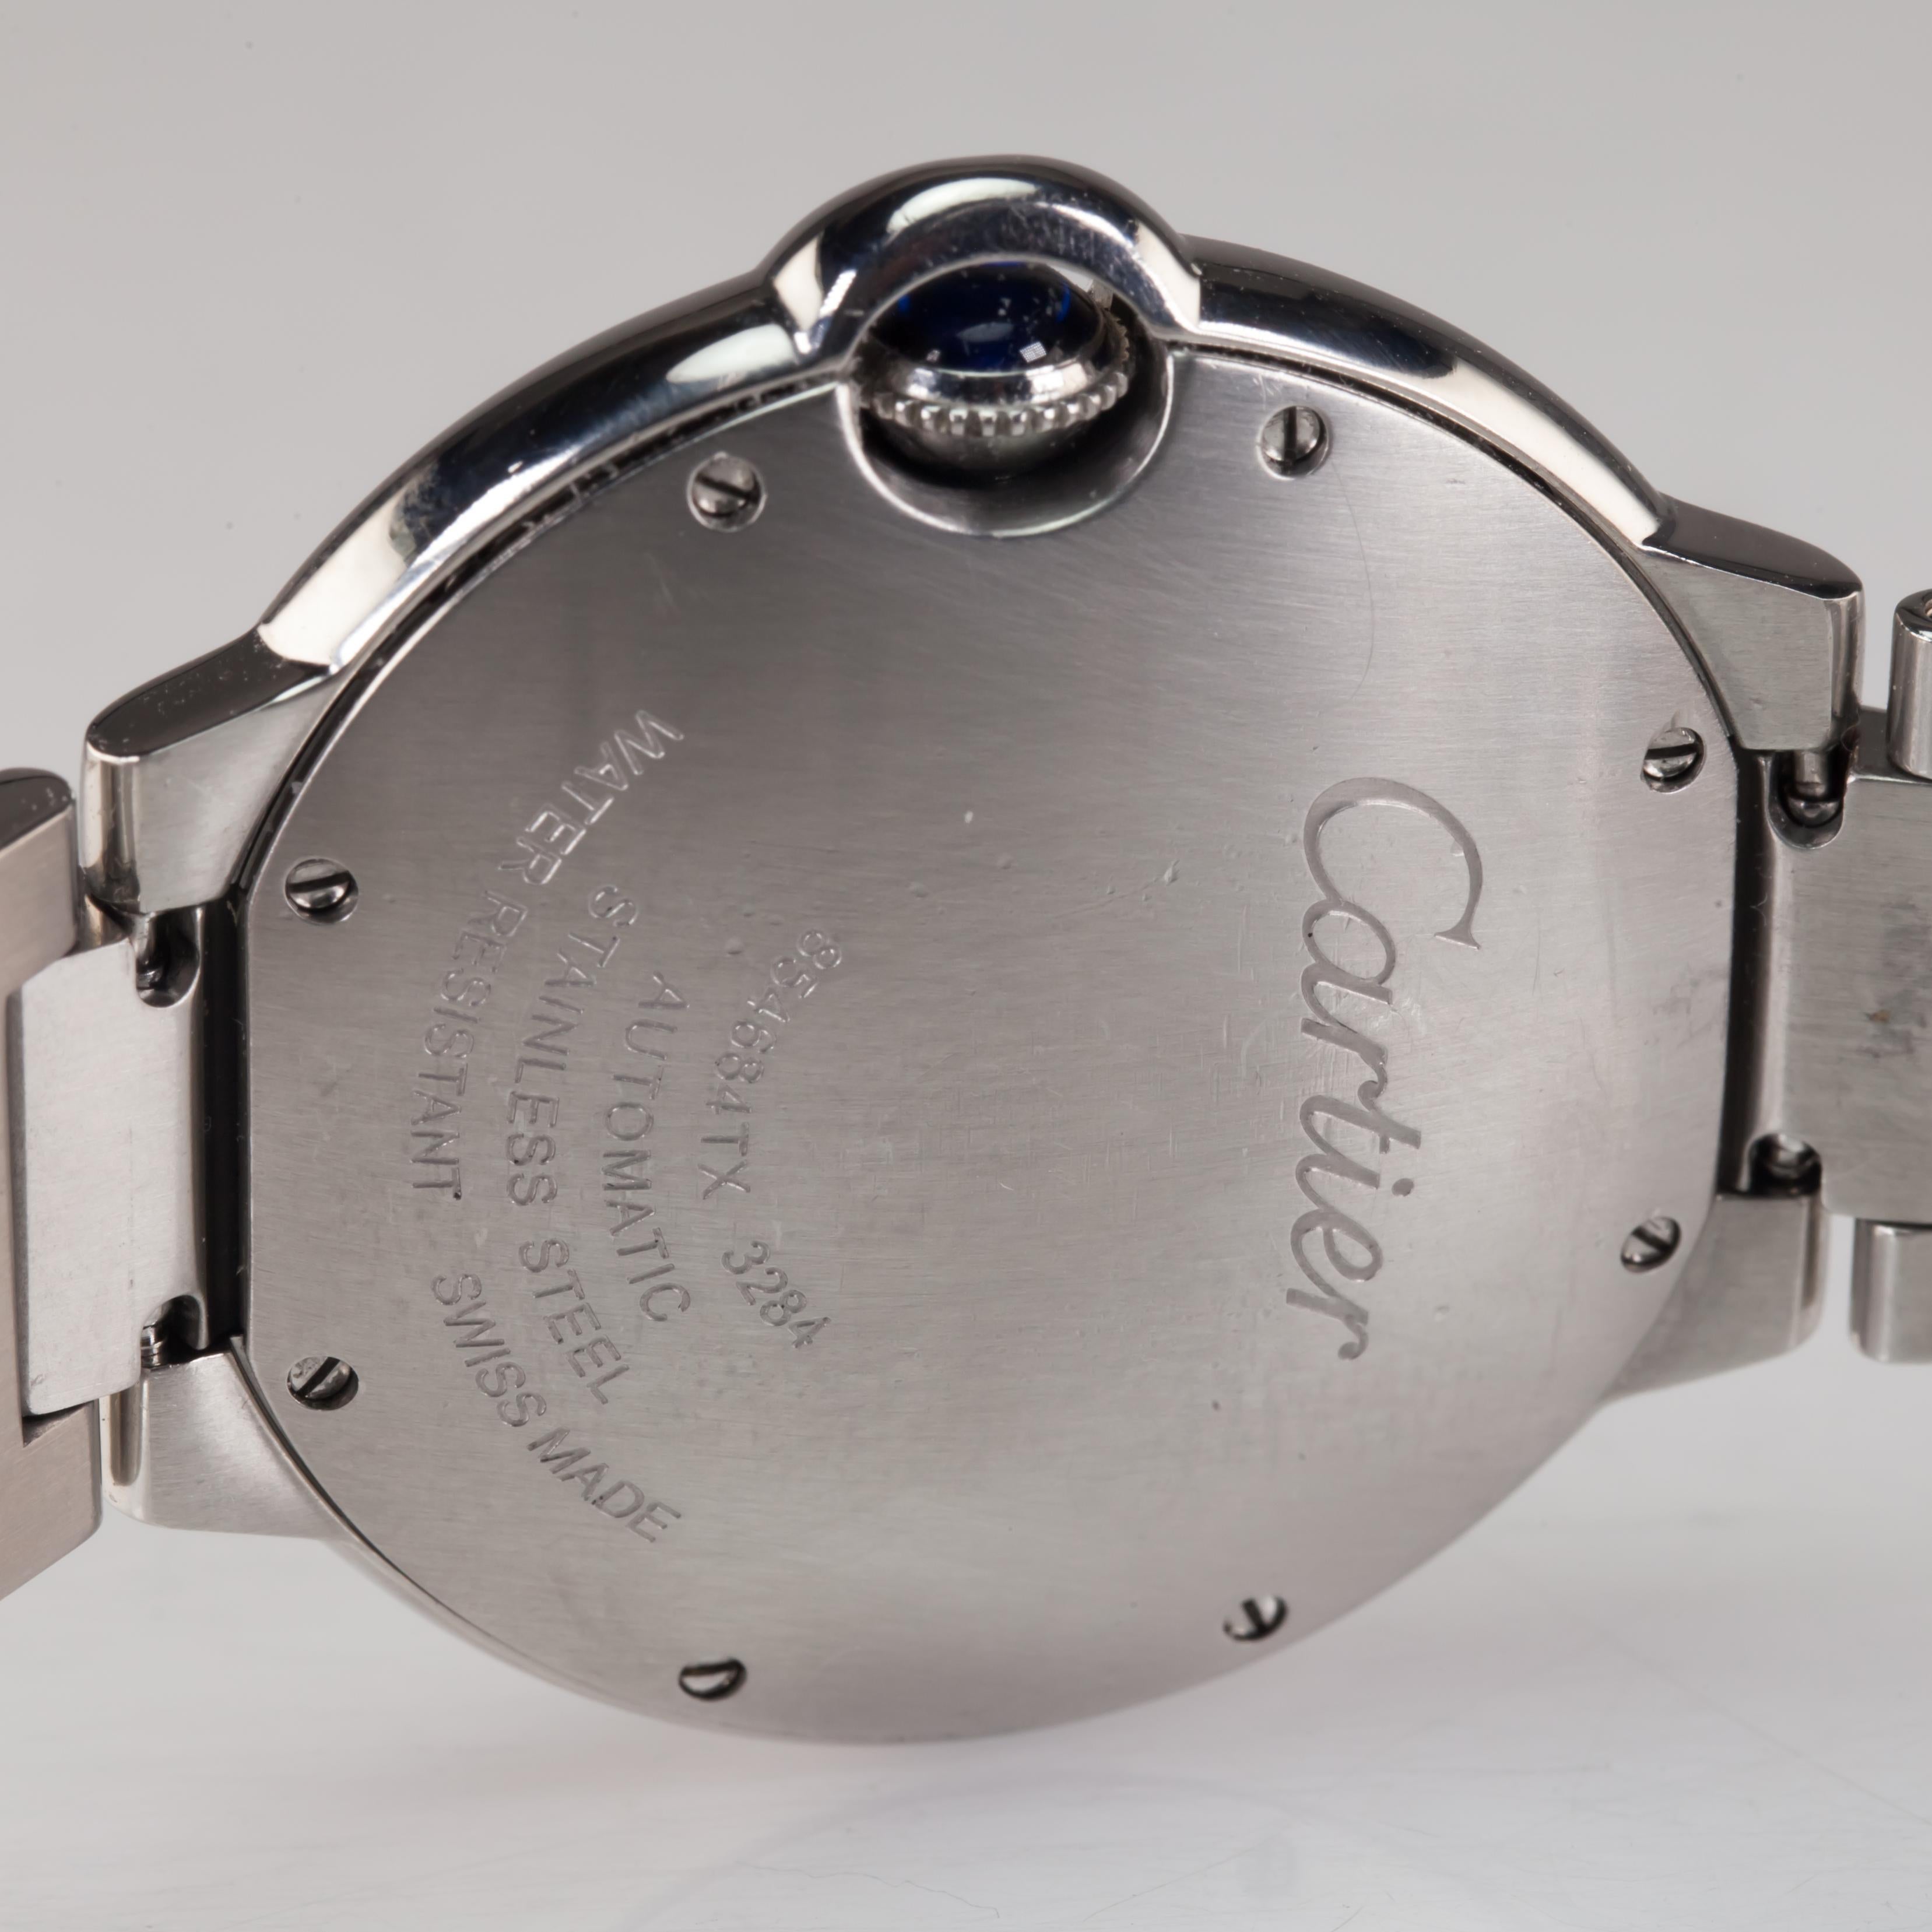 Modern Cartier Ballon Bleu Women's Automatic Watch Stainless Steel 3284 For Sale